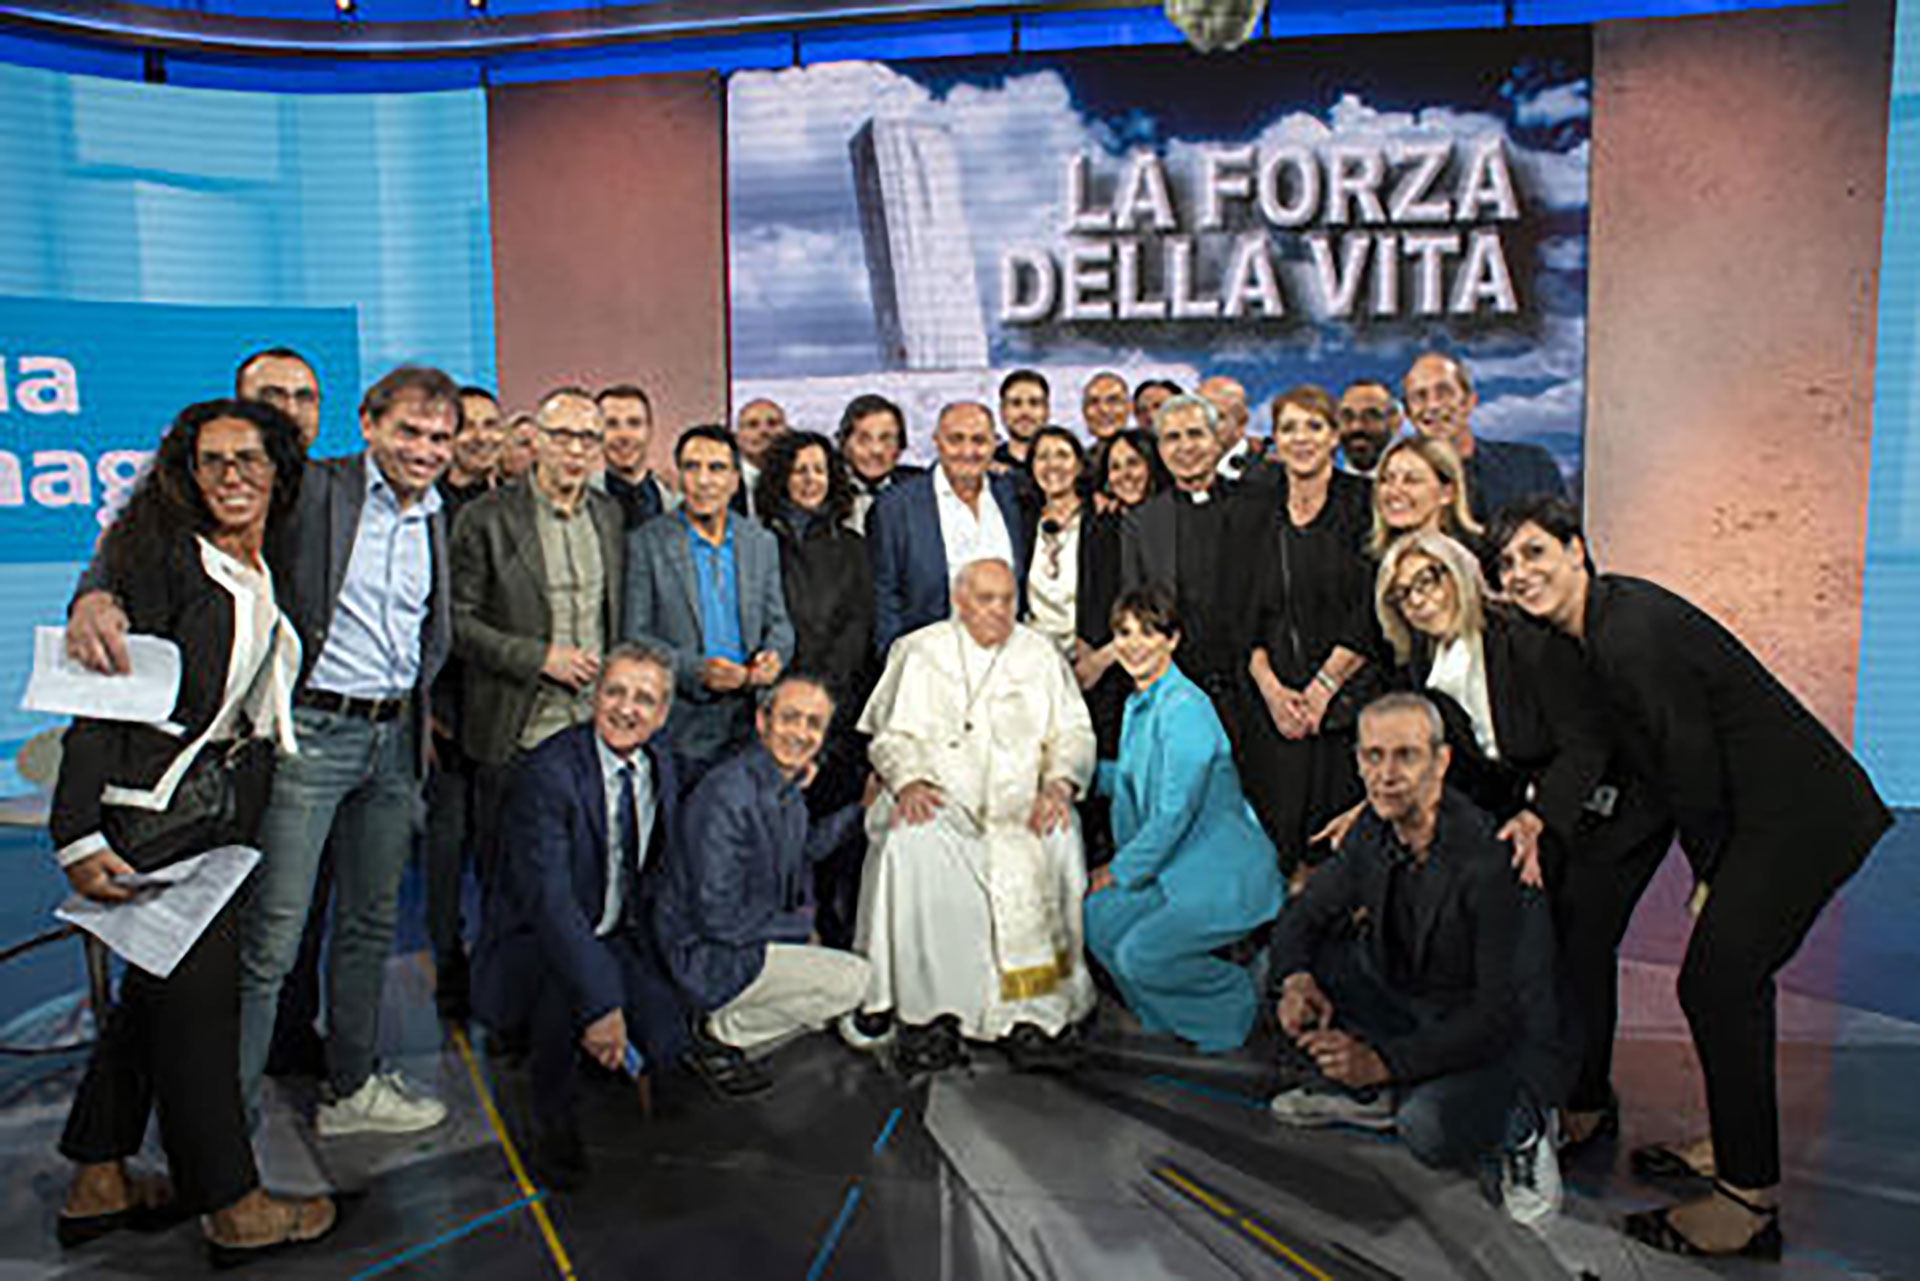 Por primera vez, el papa Francisco asistió a un estudio de TV para una entrevista a un programa italiano